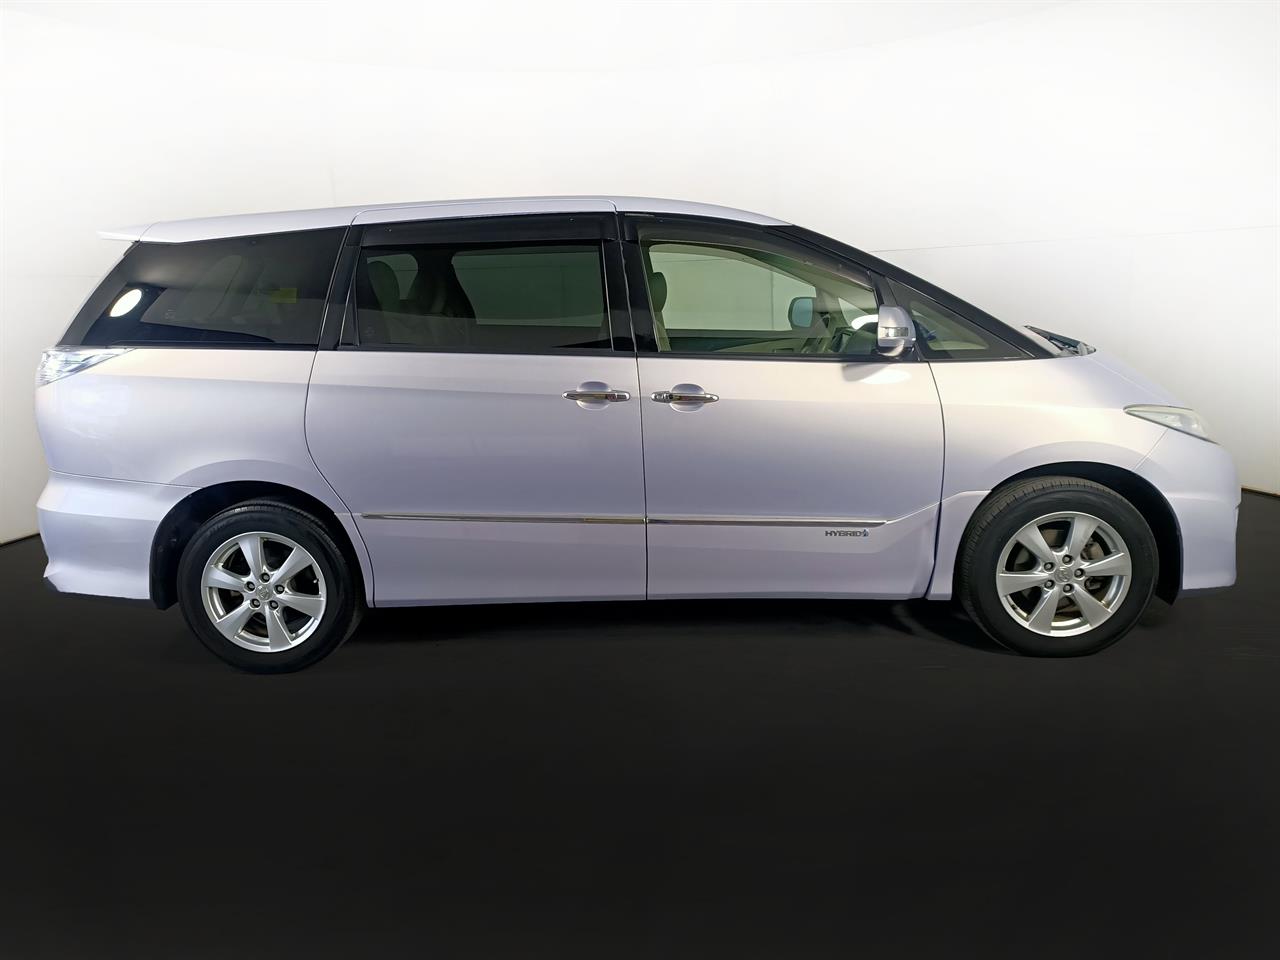 2009 Toyota Estima Hybrid 